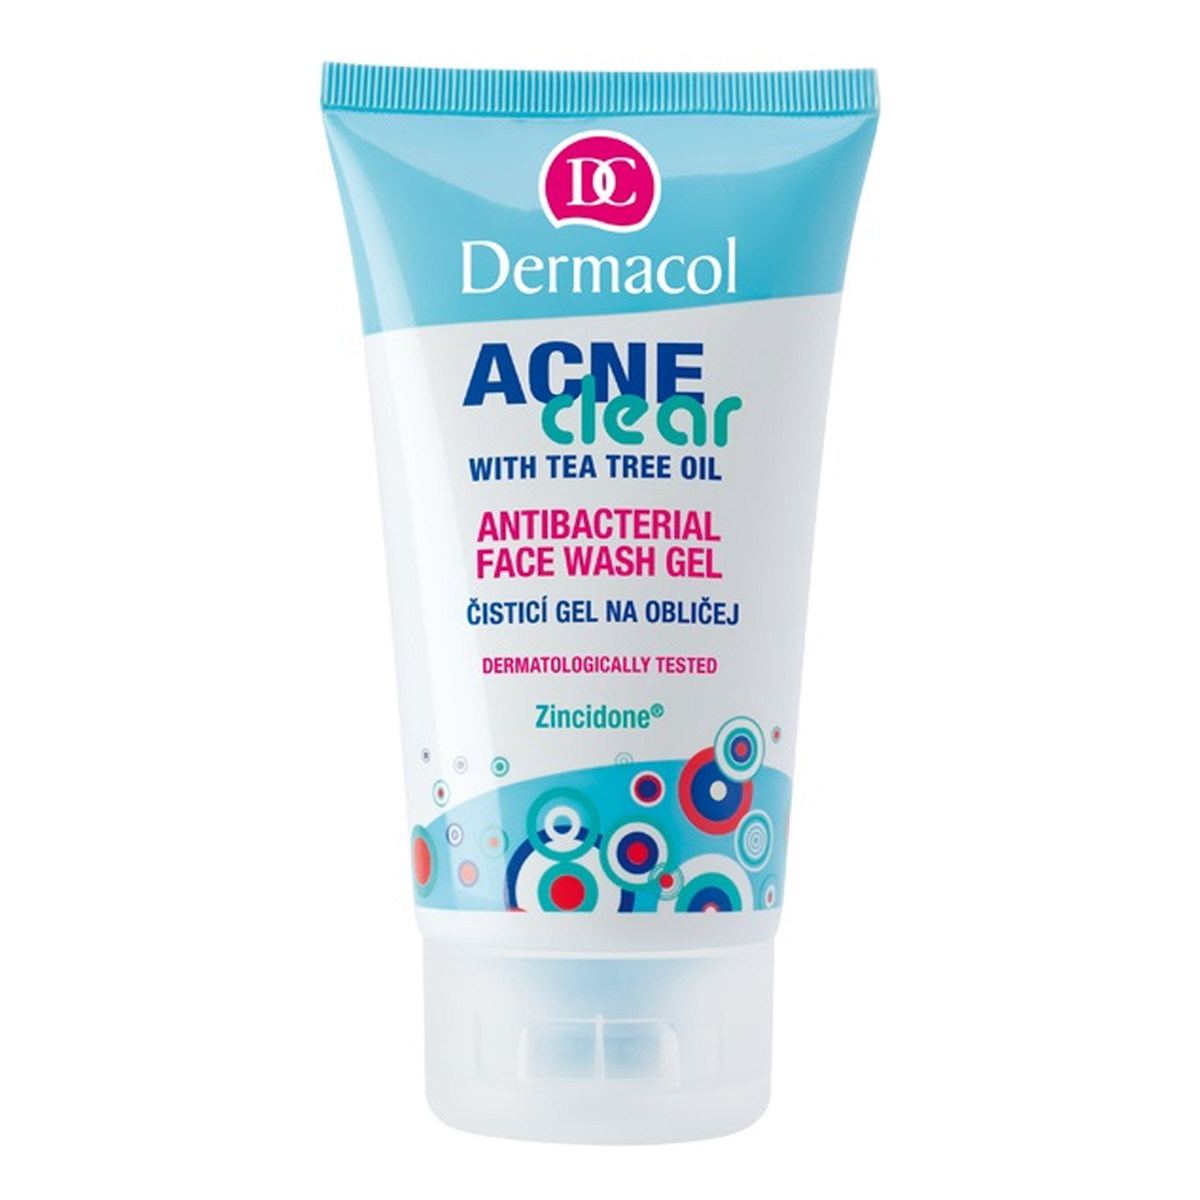 Dermacol AcneClear Antibacterial Face Wash Gel antybakteryjny Żel do mycia twarzy 150ml